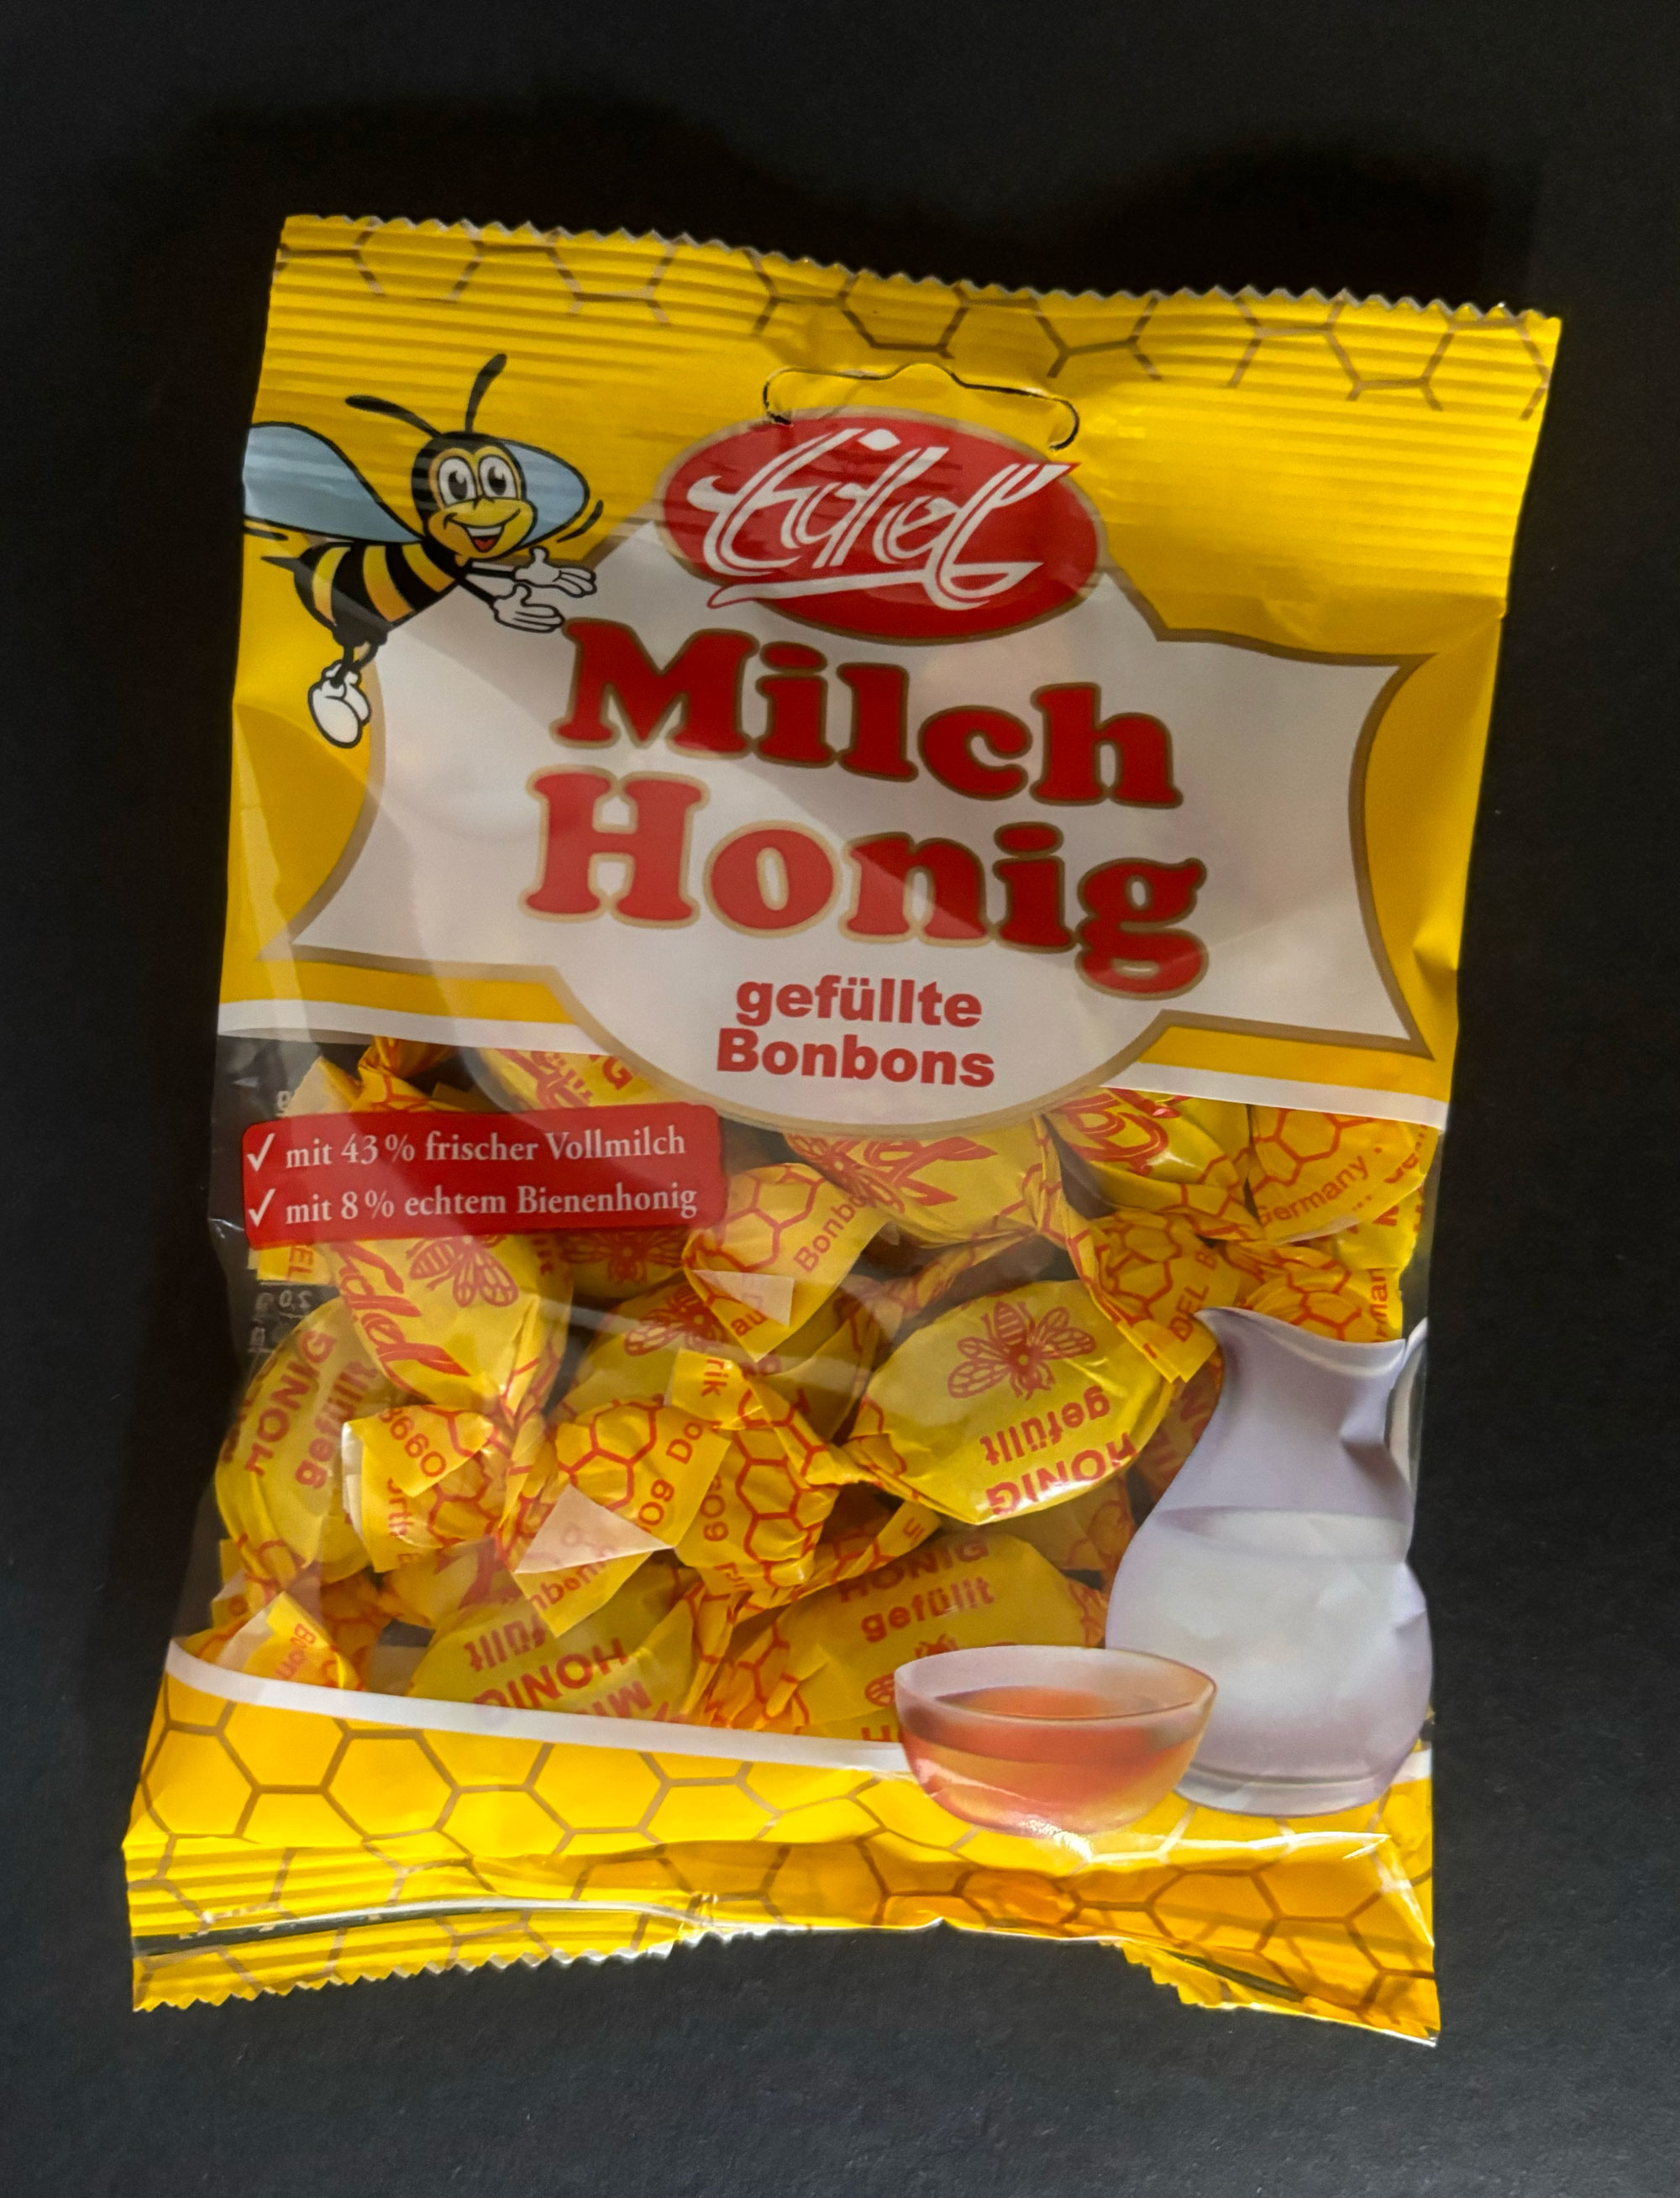 Honig Milch gefüllte Bonbons 90g